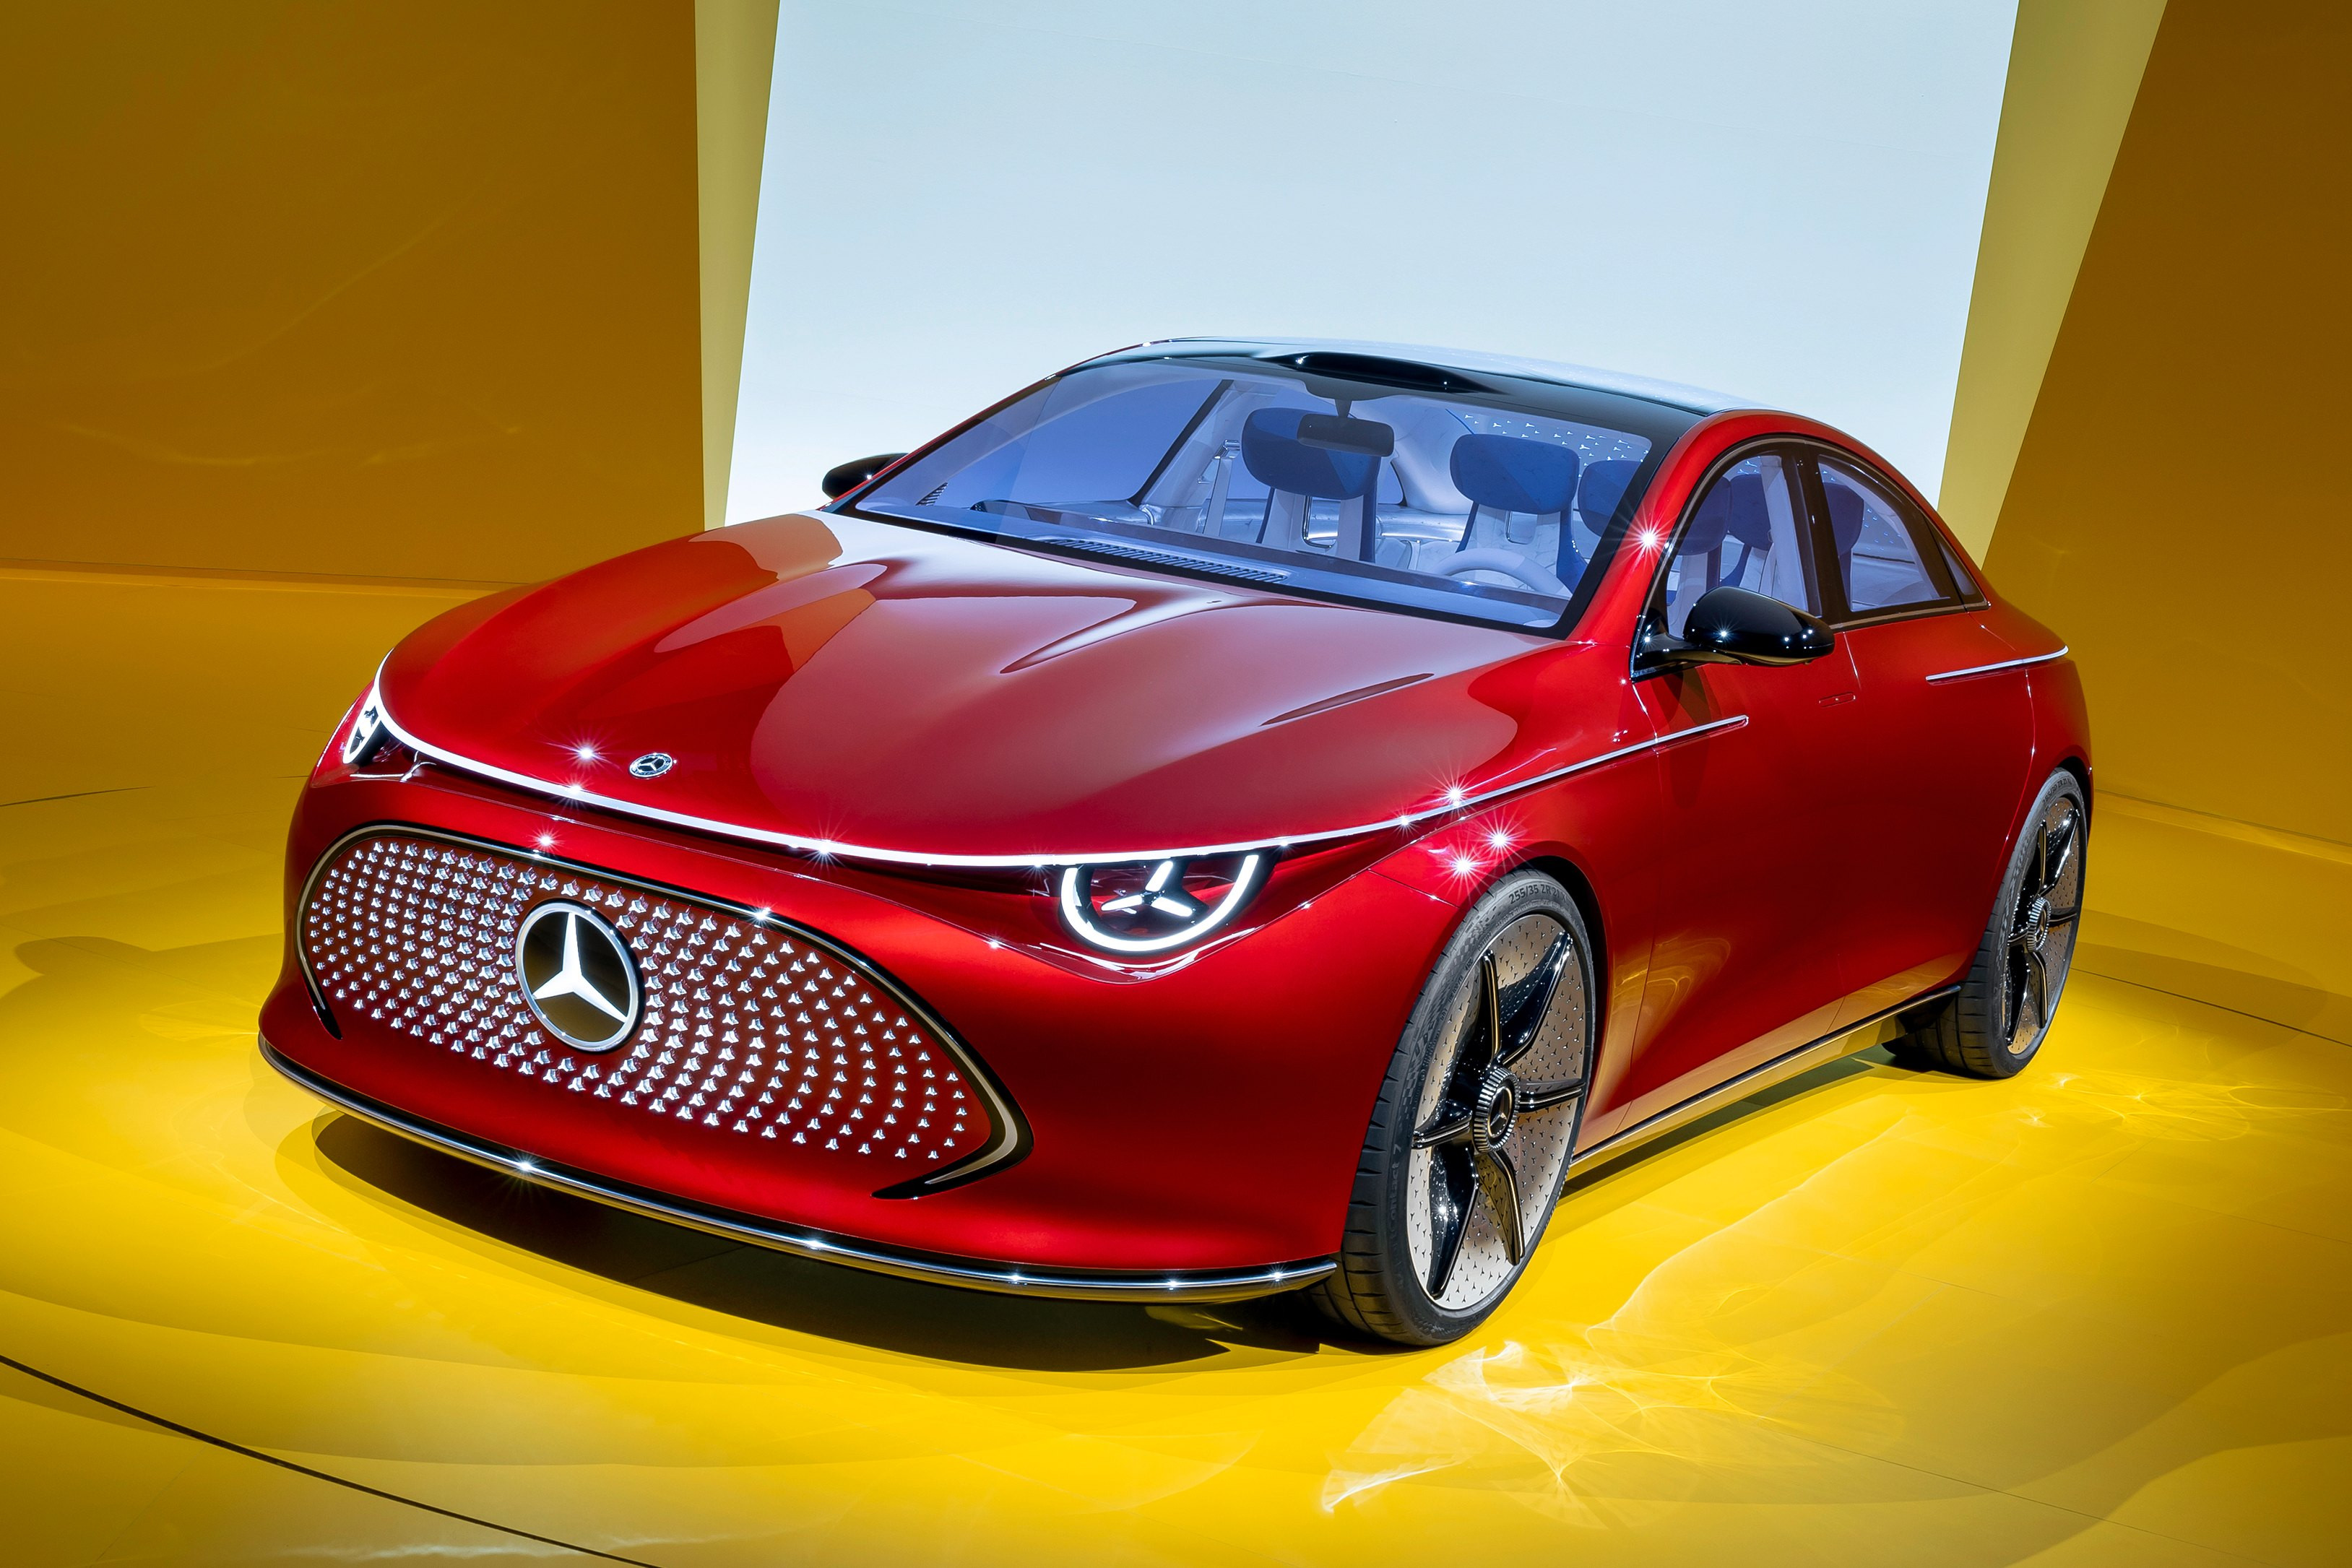 Mercedes-Benz ra mắt xe điện concept cỡ nhỏ đầy ắp công nghệ